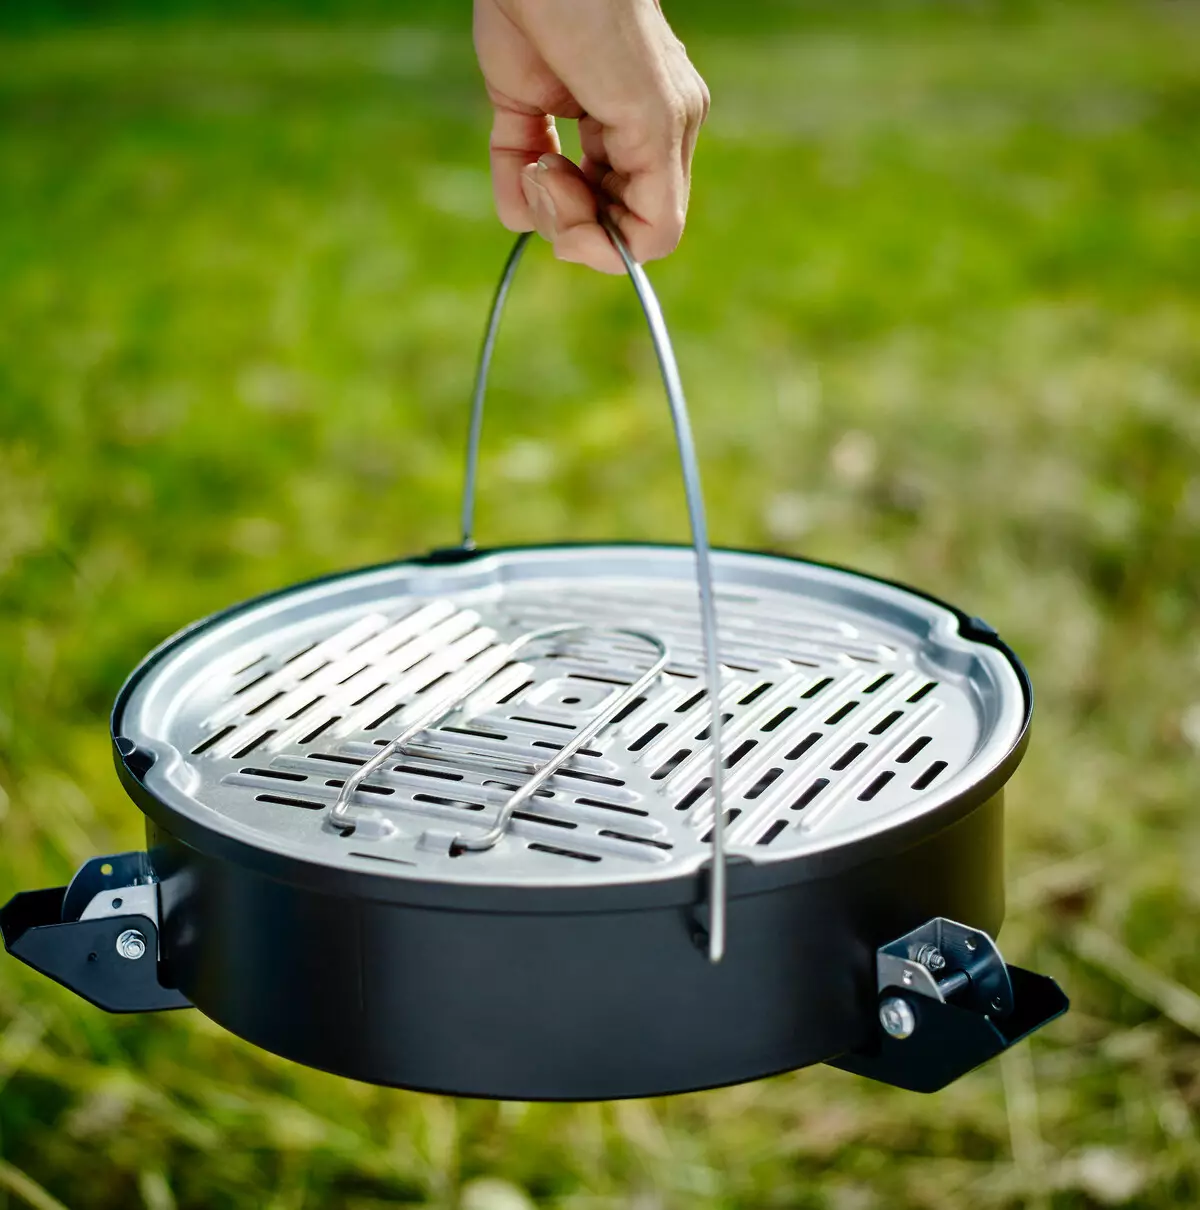 Portable grill kubanga